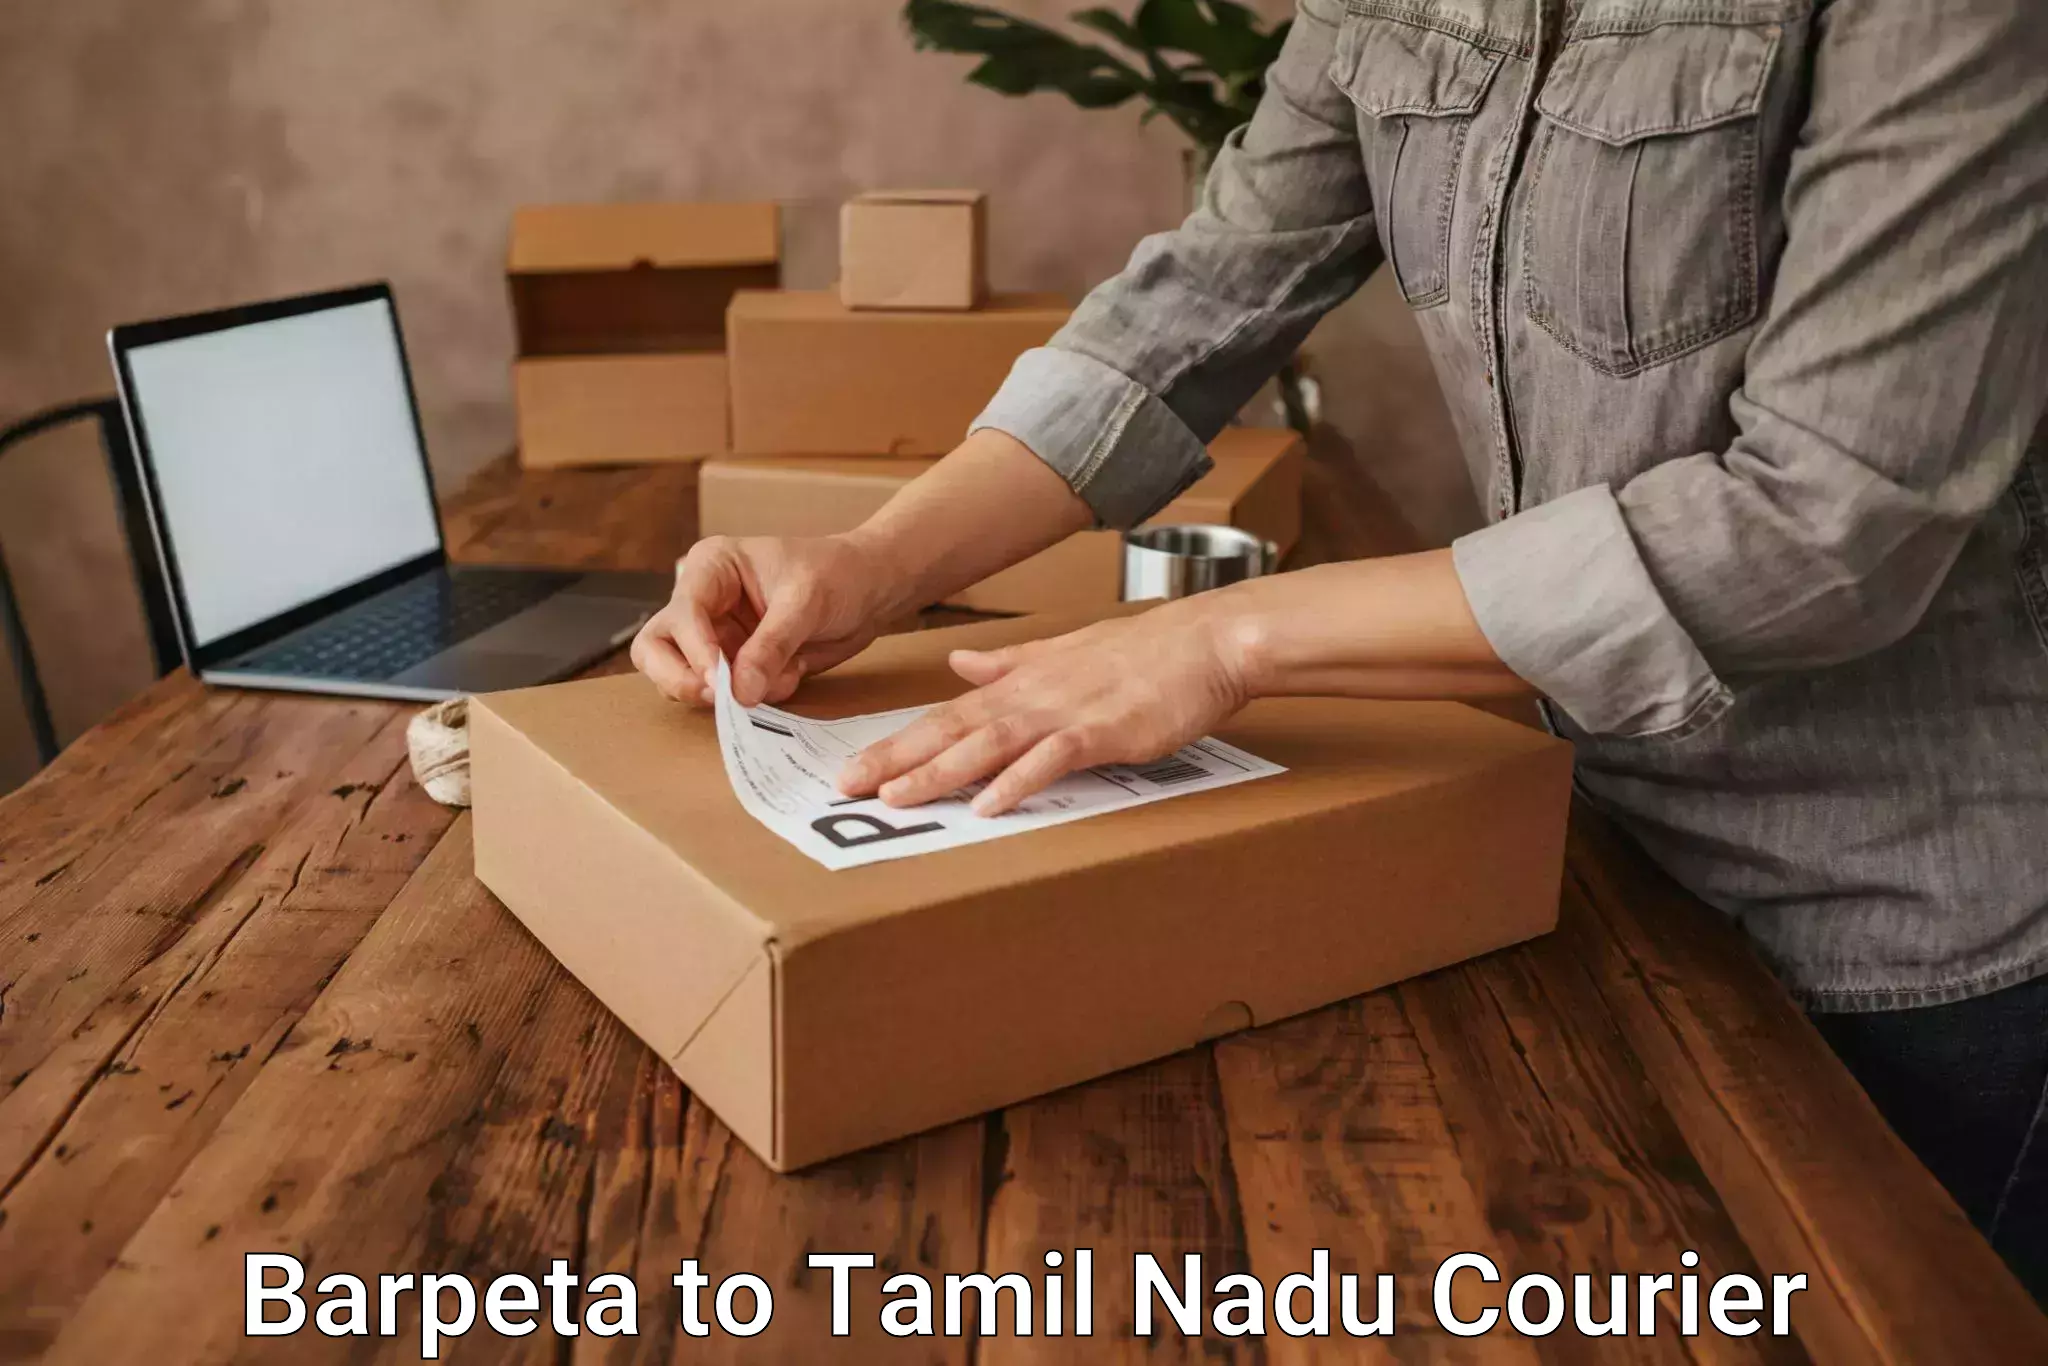 Premium courier services Barpeta to Namakkal